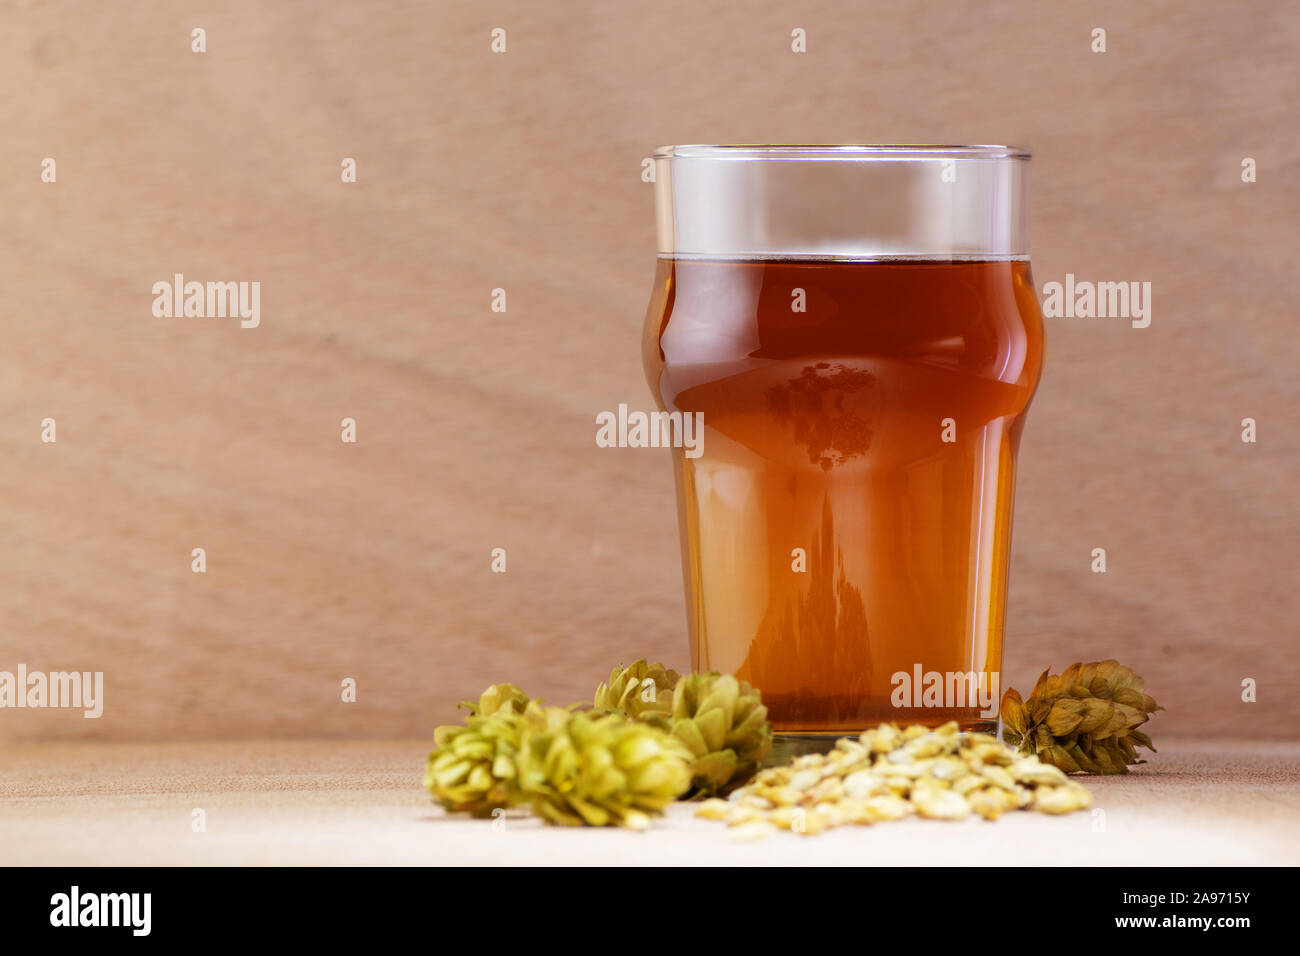 Bier in ein Glas mit Gerste und Hopfen auf Holz- Hintergrund. Handwerk Bier, Brauereien und Alkohol trinken Konzepte. Stockfoto